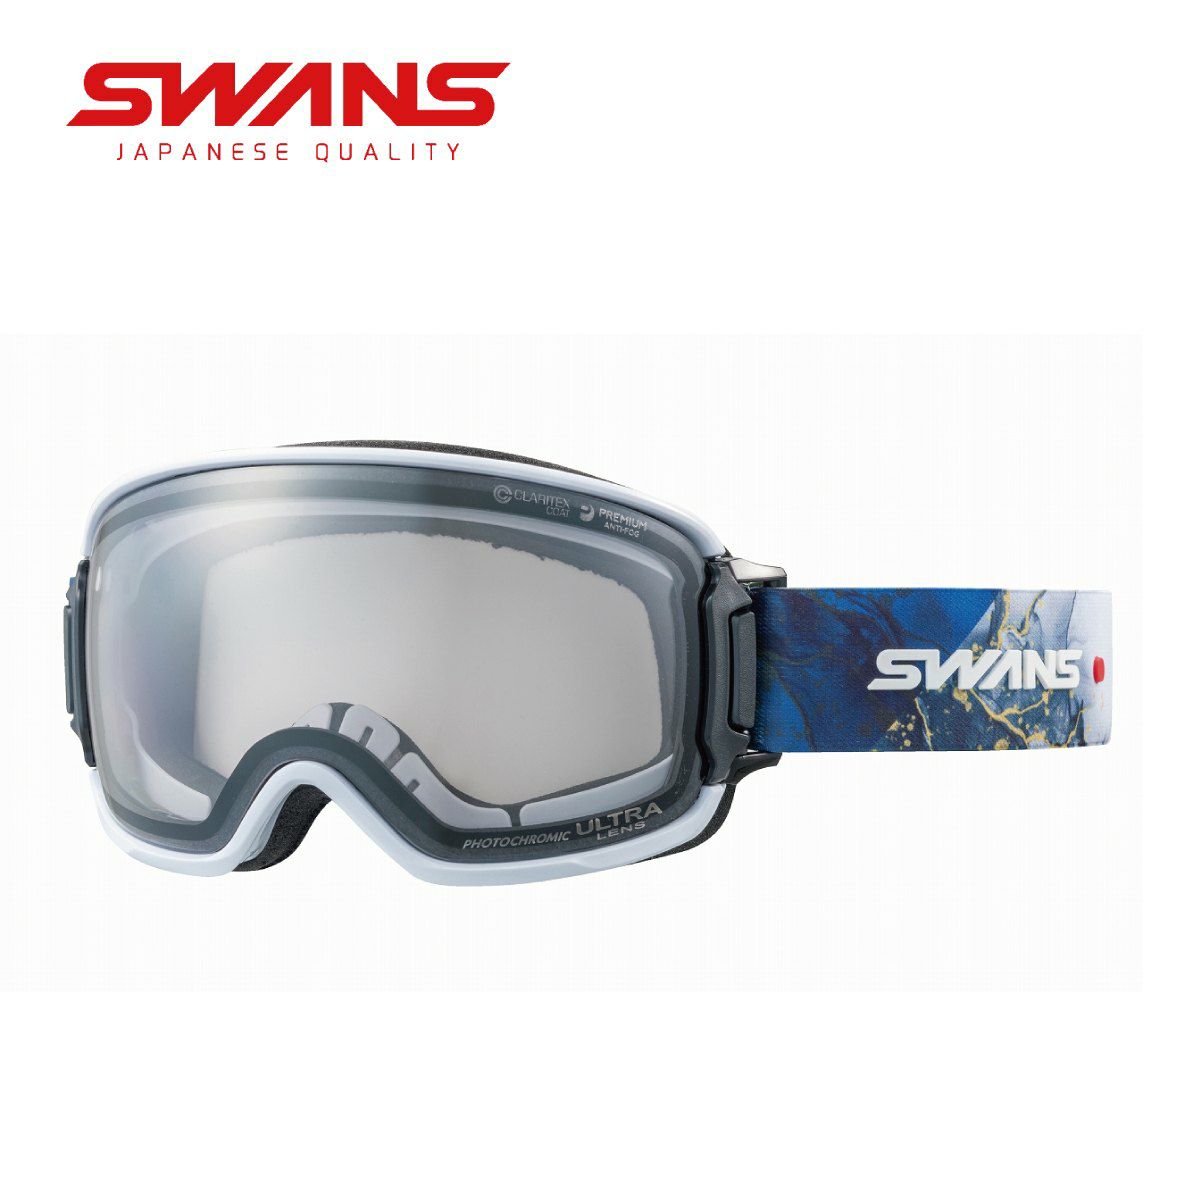 SWANS (スワンズ) 日本製 スノーゴーグル RIDGELINE リッジライン RL-MDH-CU-LG MTR ライトシルバーミラー×ULTRAライトグレー調光  スキー 眼鏡対応 Free Size-